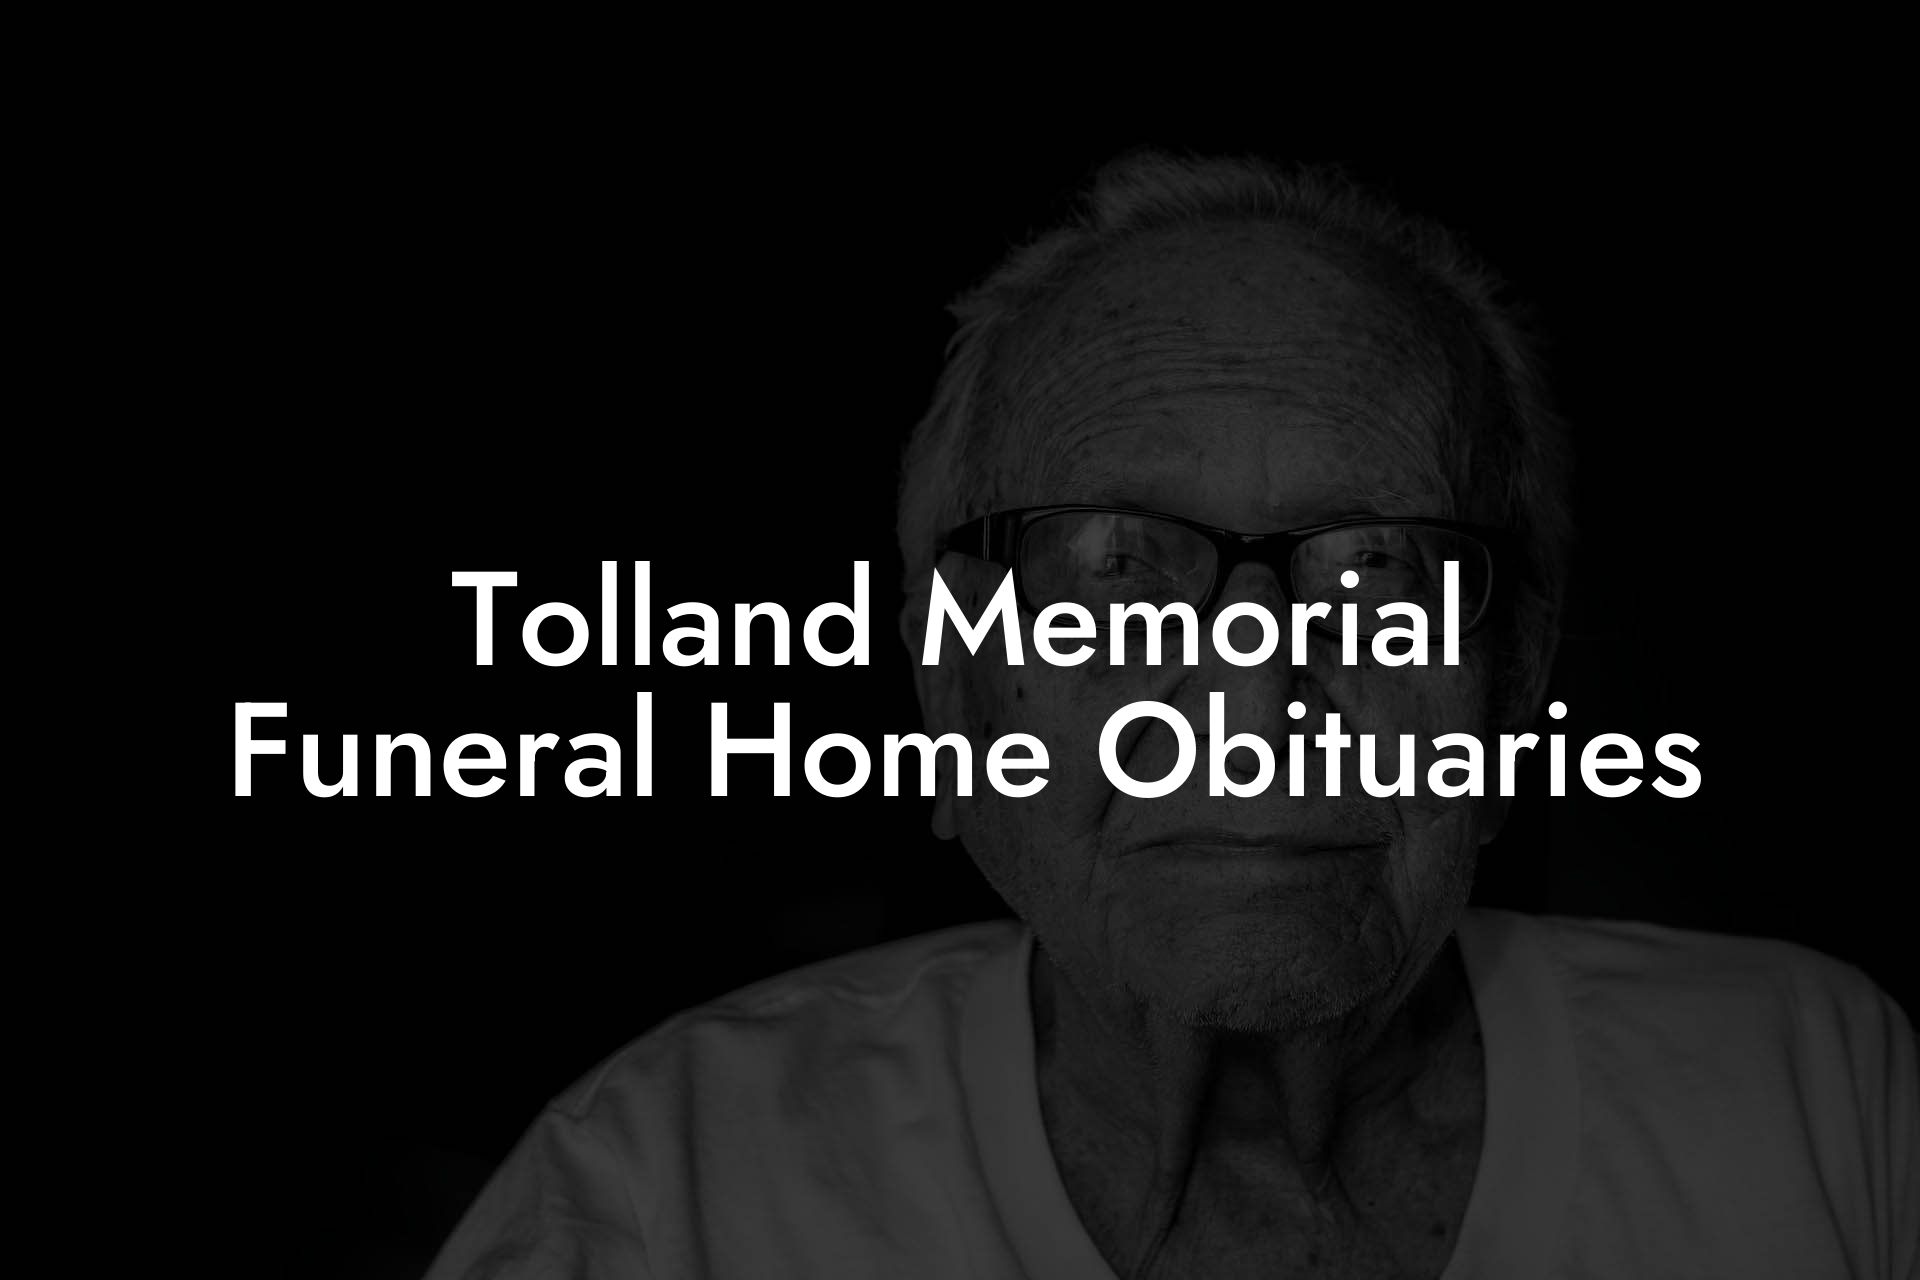 Tolland Memorial Funeral Home Obituaries